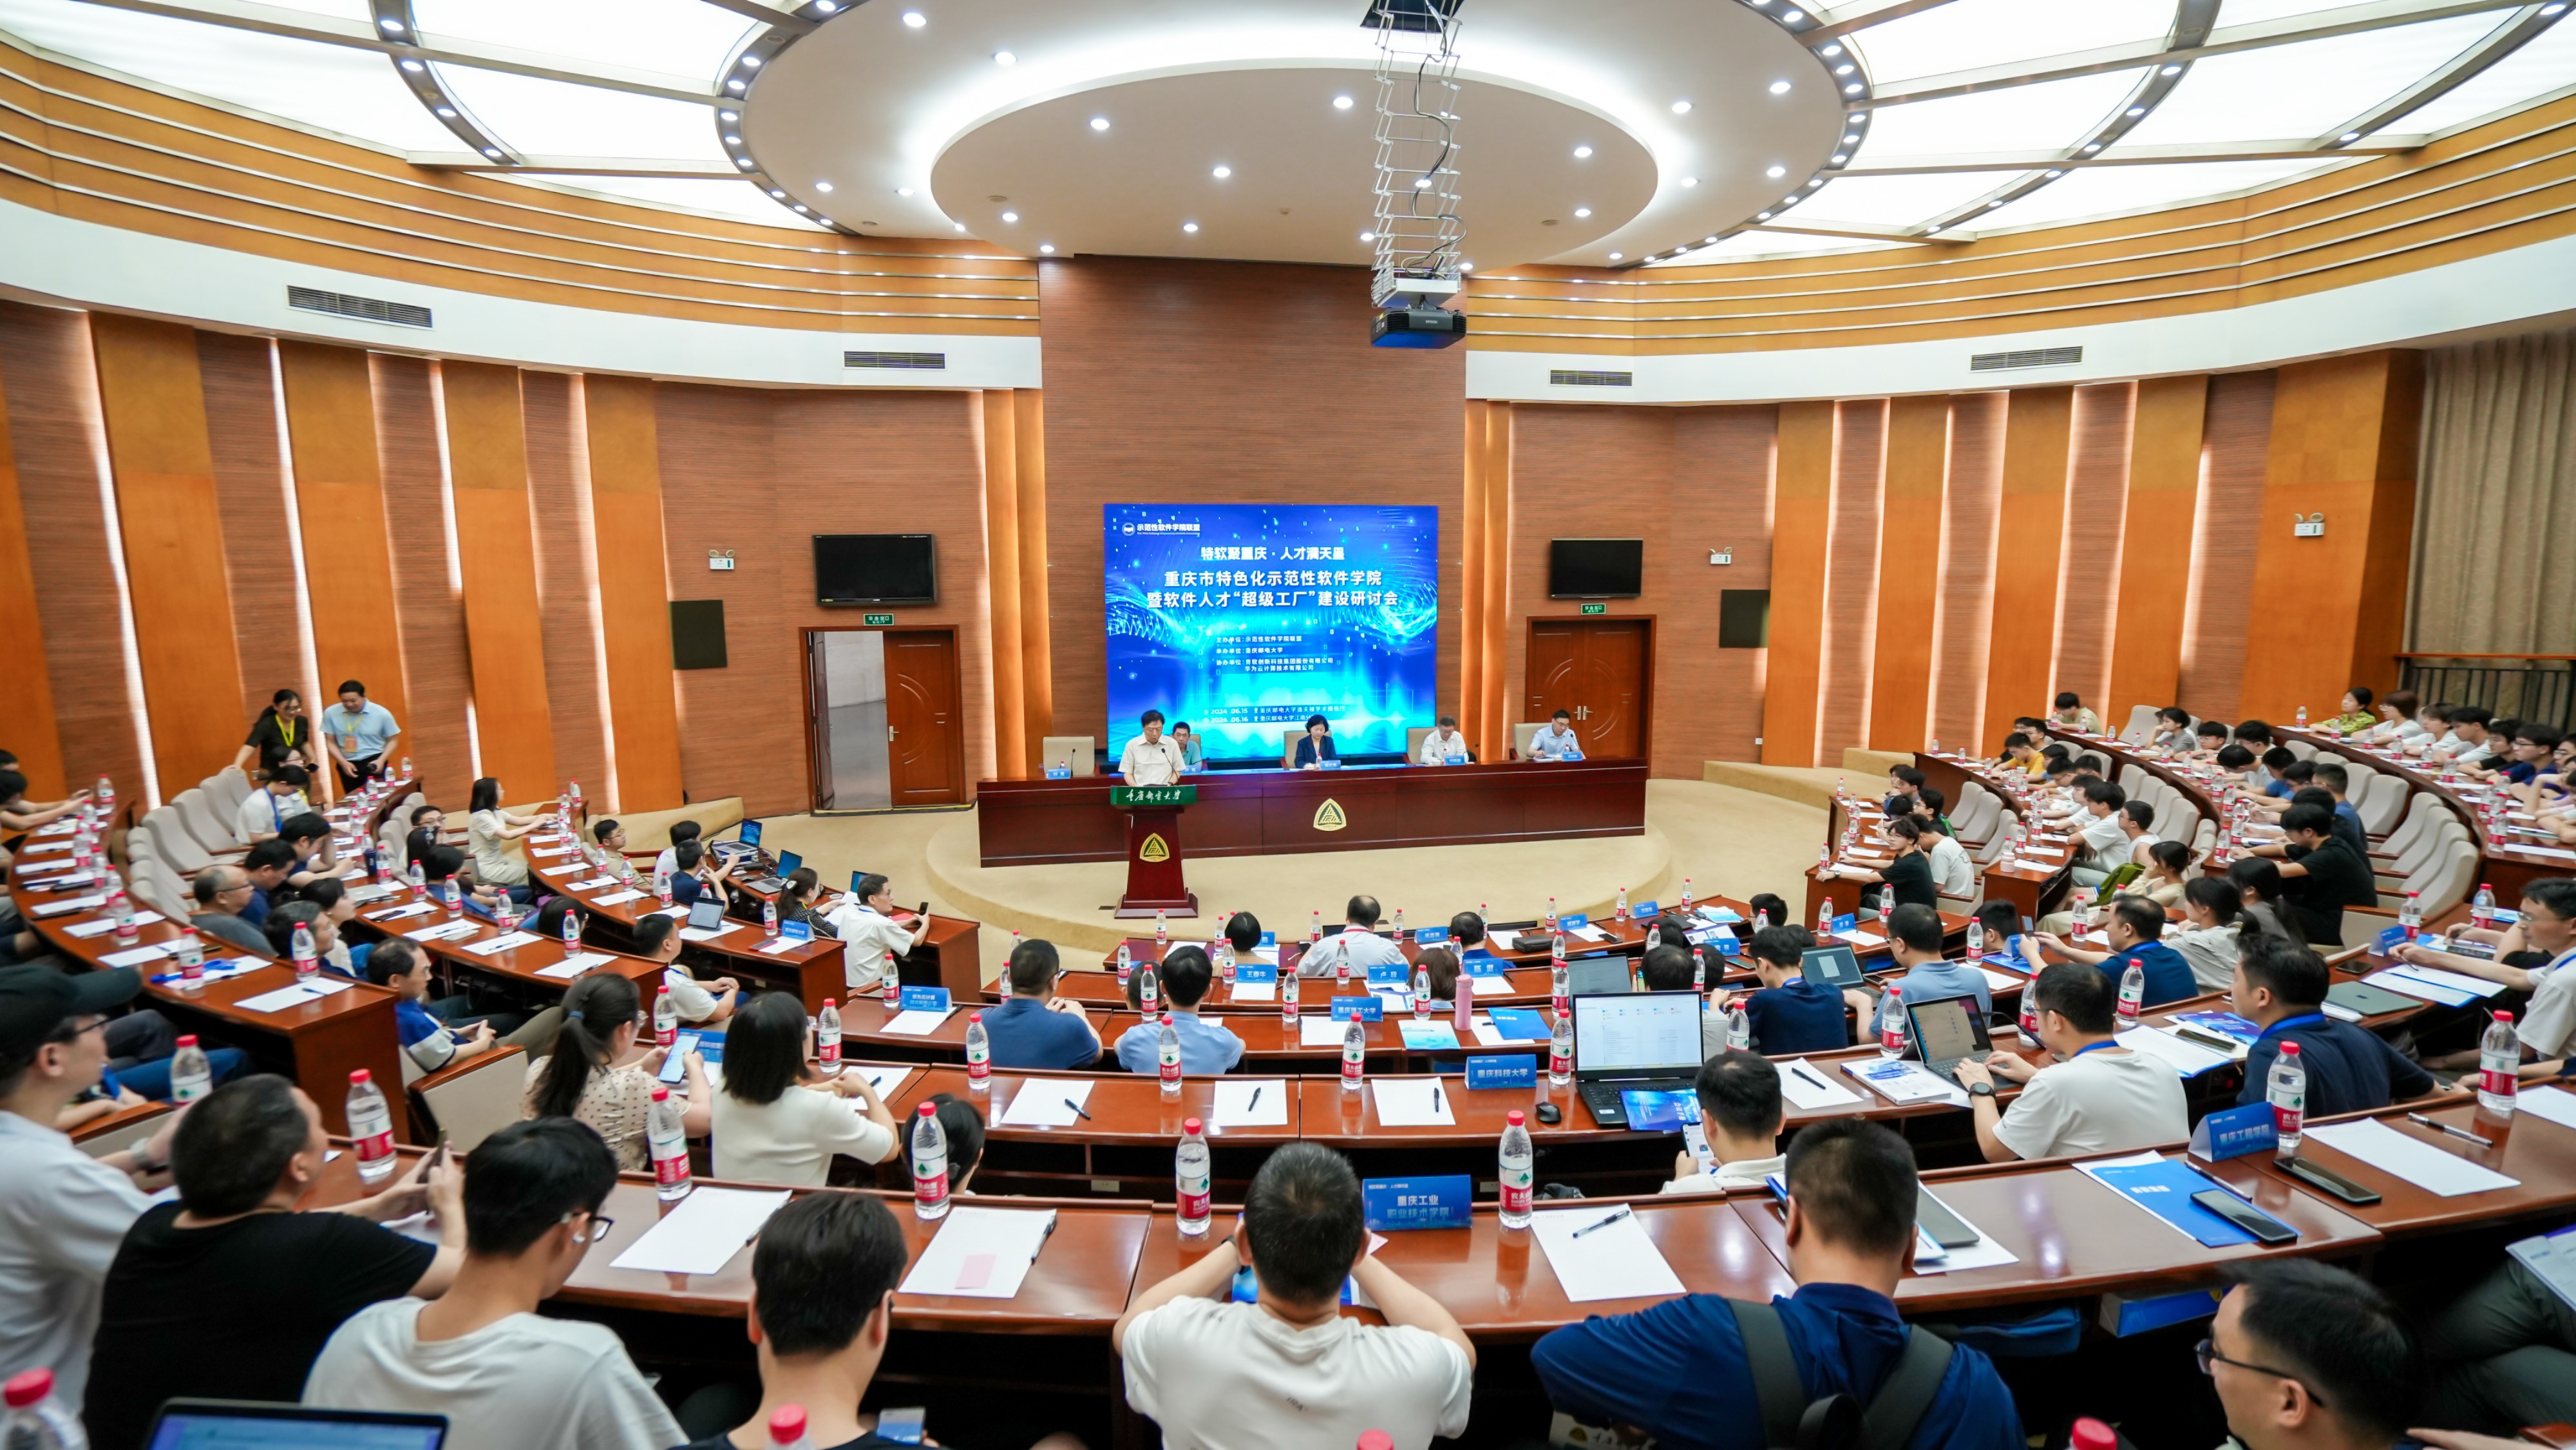 重庆市特色化示范性软件学院暨软件人才“超级工厂” 建设研讨会在重庆邮电大学举行